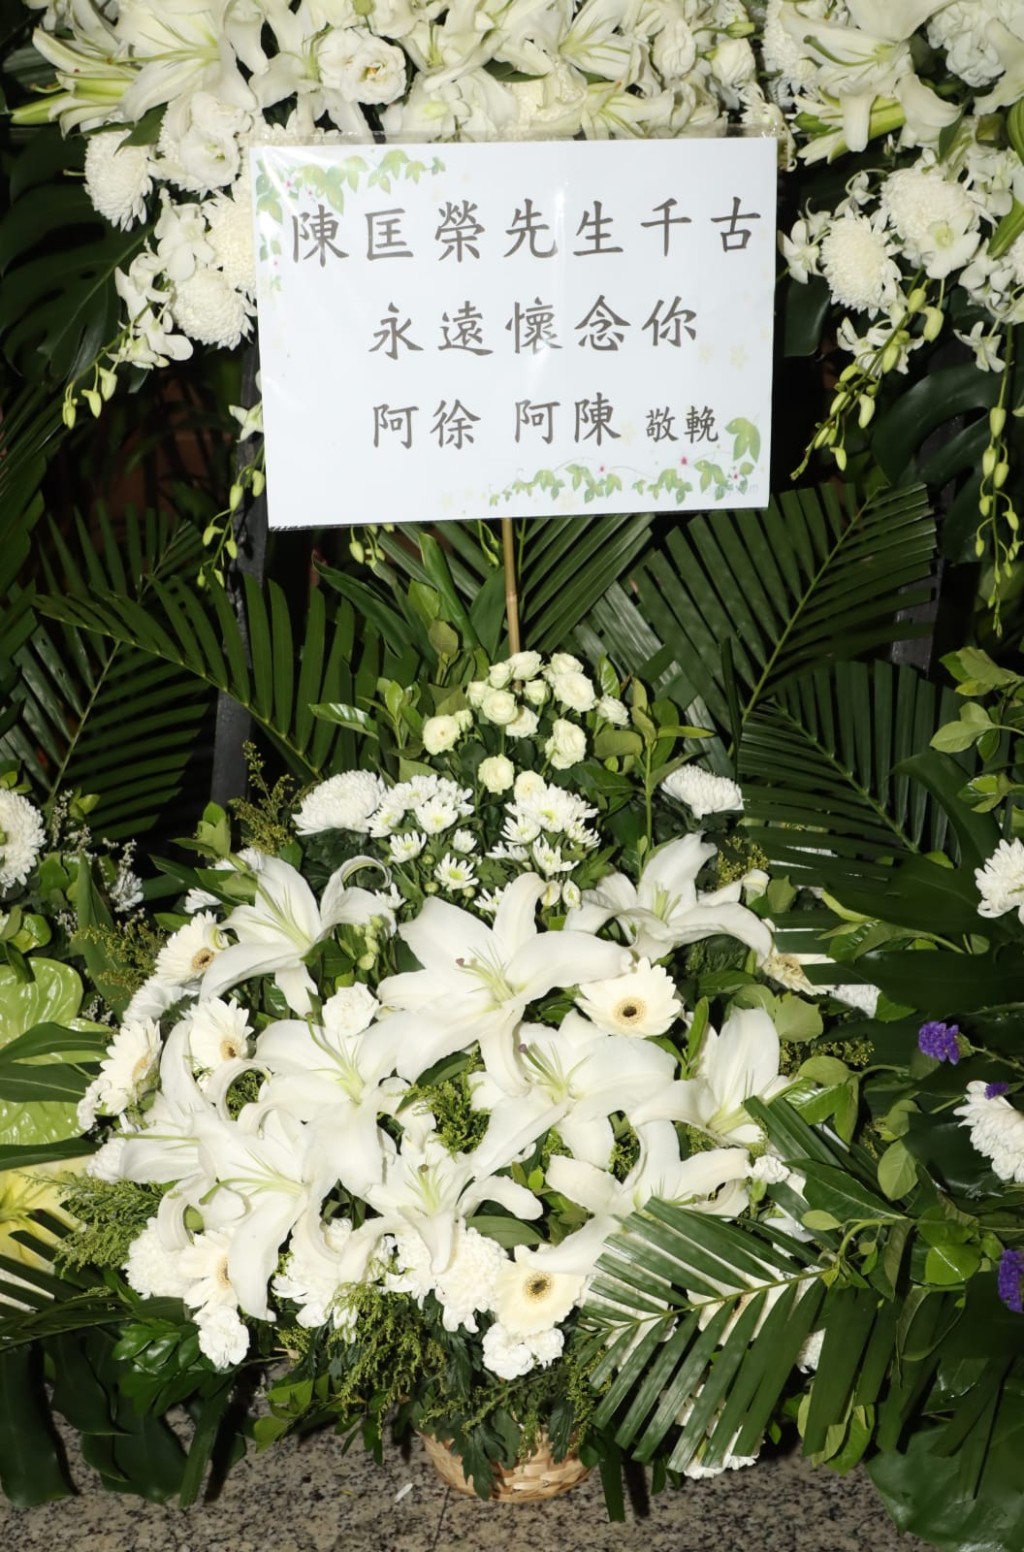 众多圈中人都致花牌悼念陈匡荣。